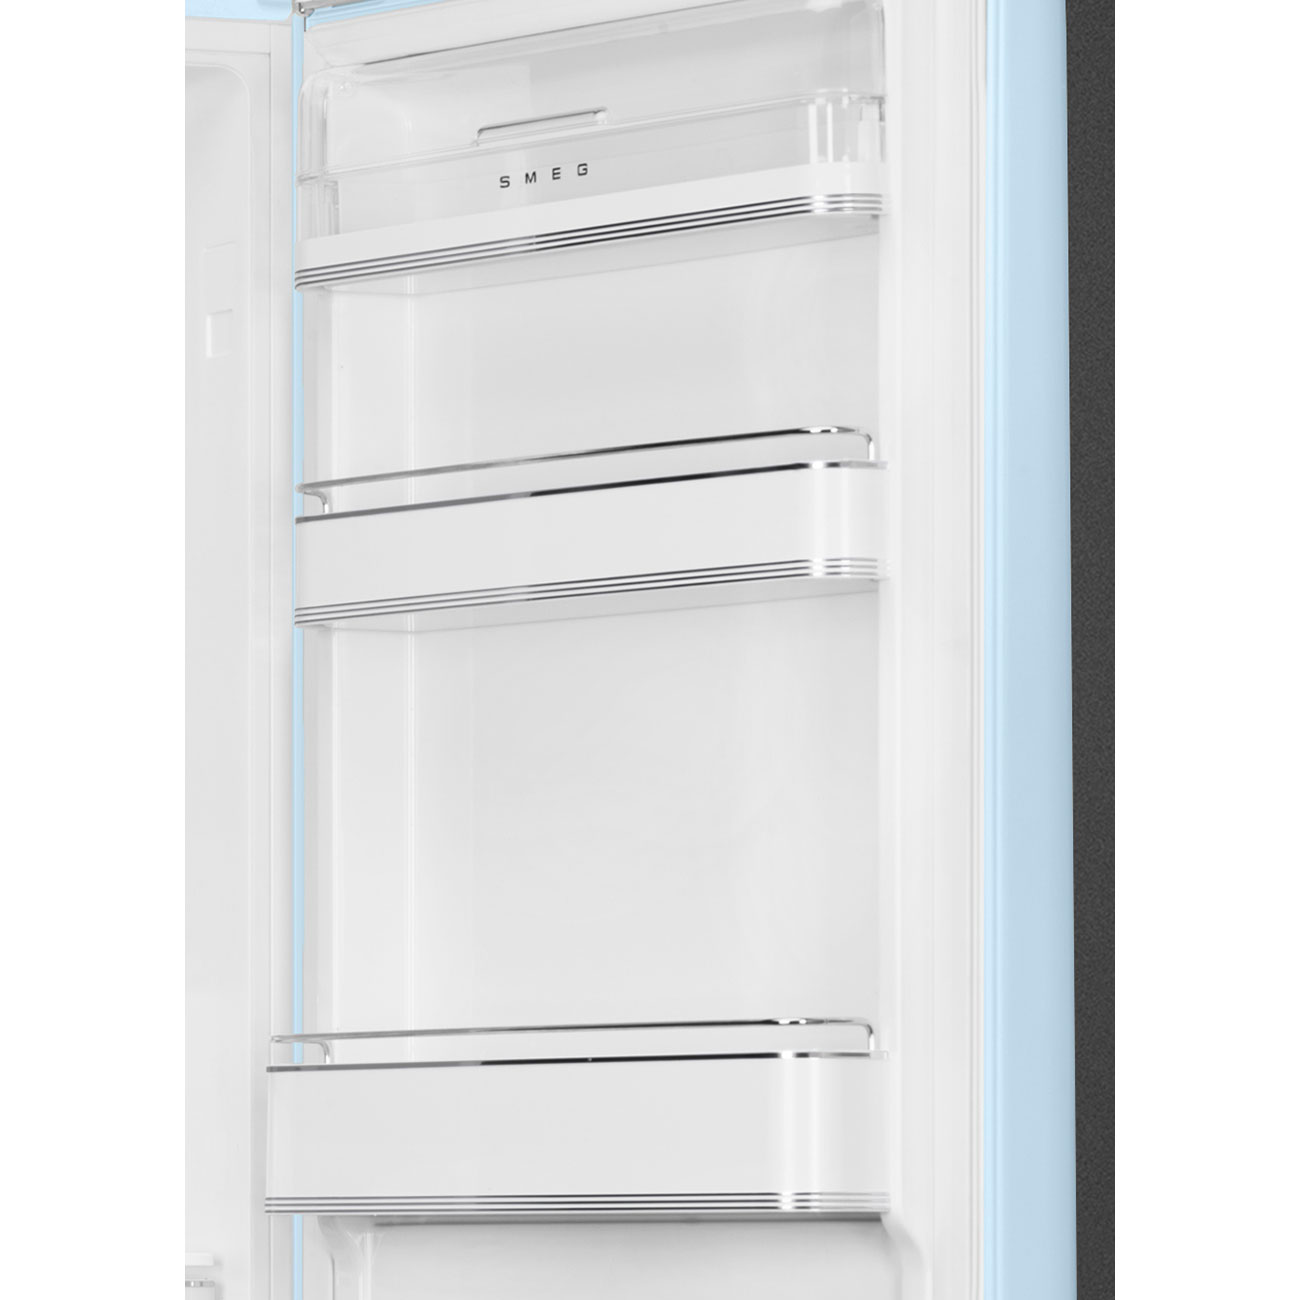 Pastel blue refrigerator - Smeg_4